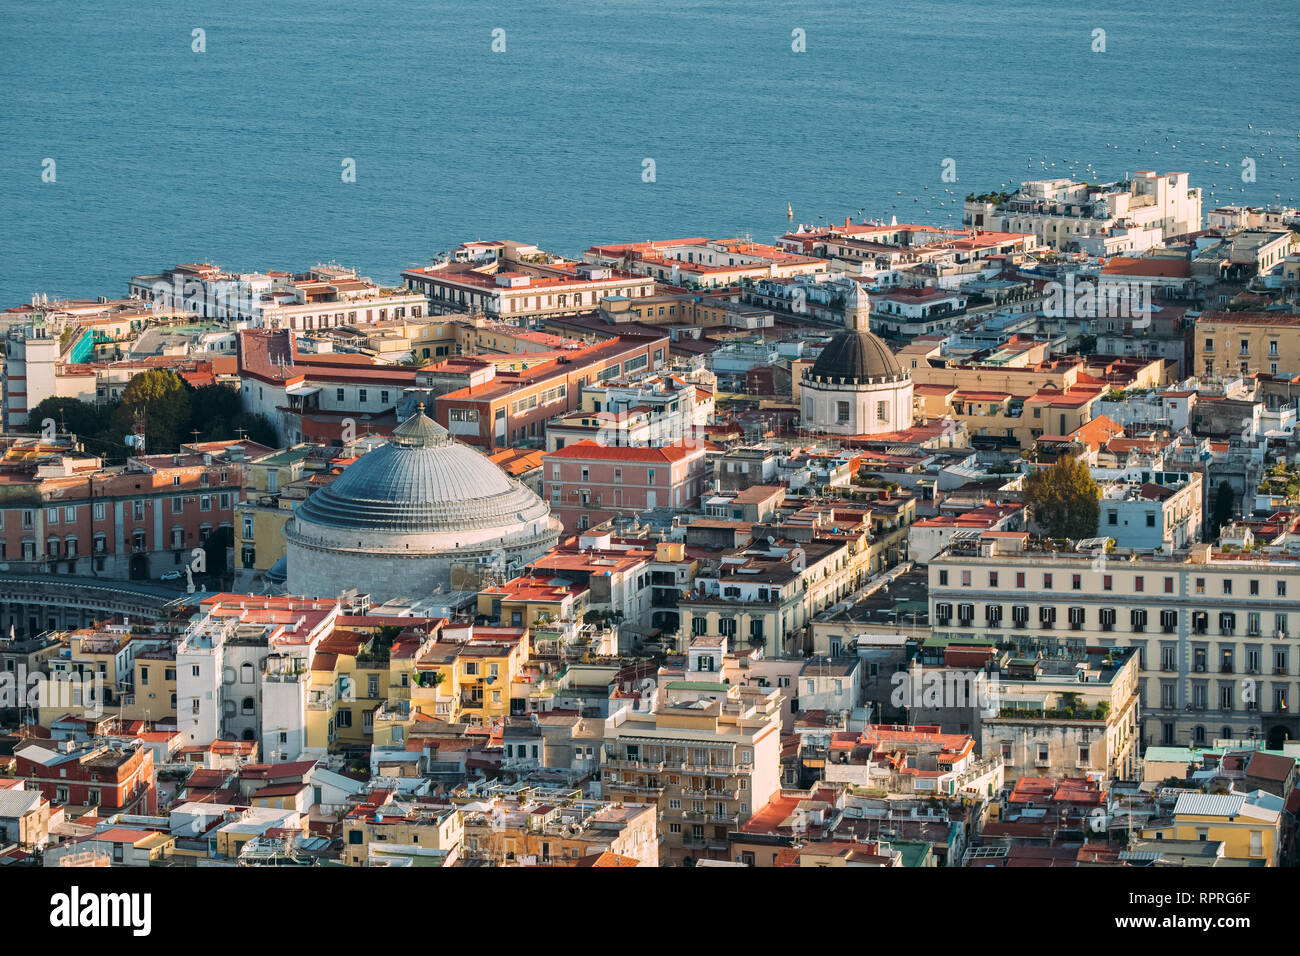 Neapel, Italien. Ansicht von oben Skyline Skyline mit berühmten Sehenswürdigkeiten und Teil des Golfes von Neapel In sonniger Tag. Viele alte Kirchen und Tempel Stockfoto